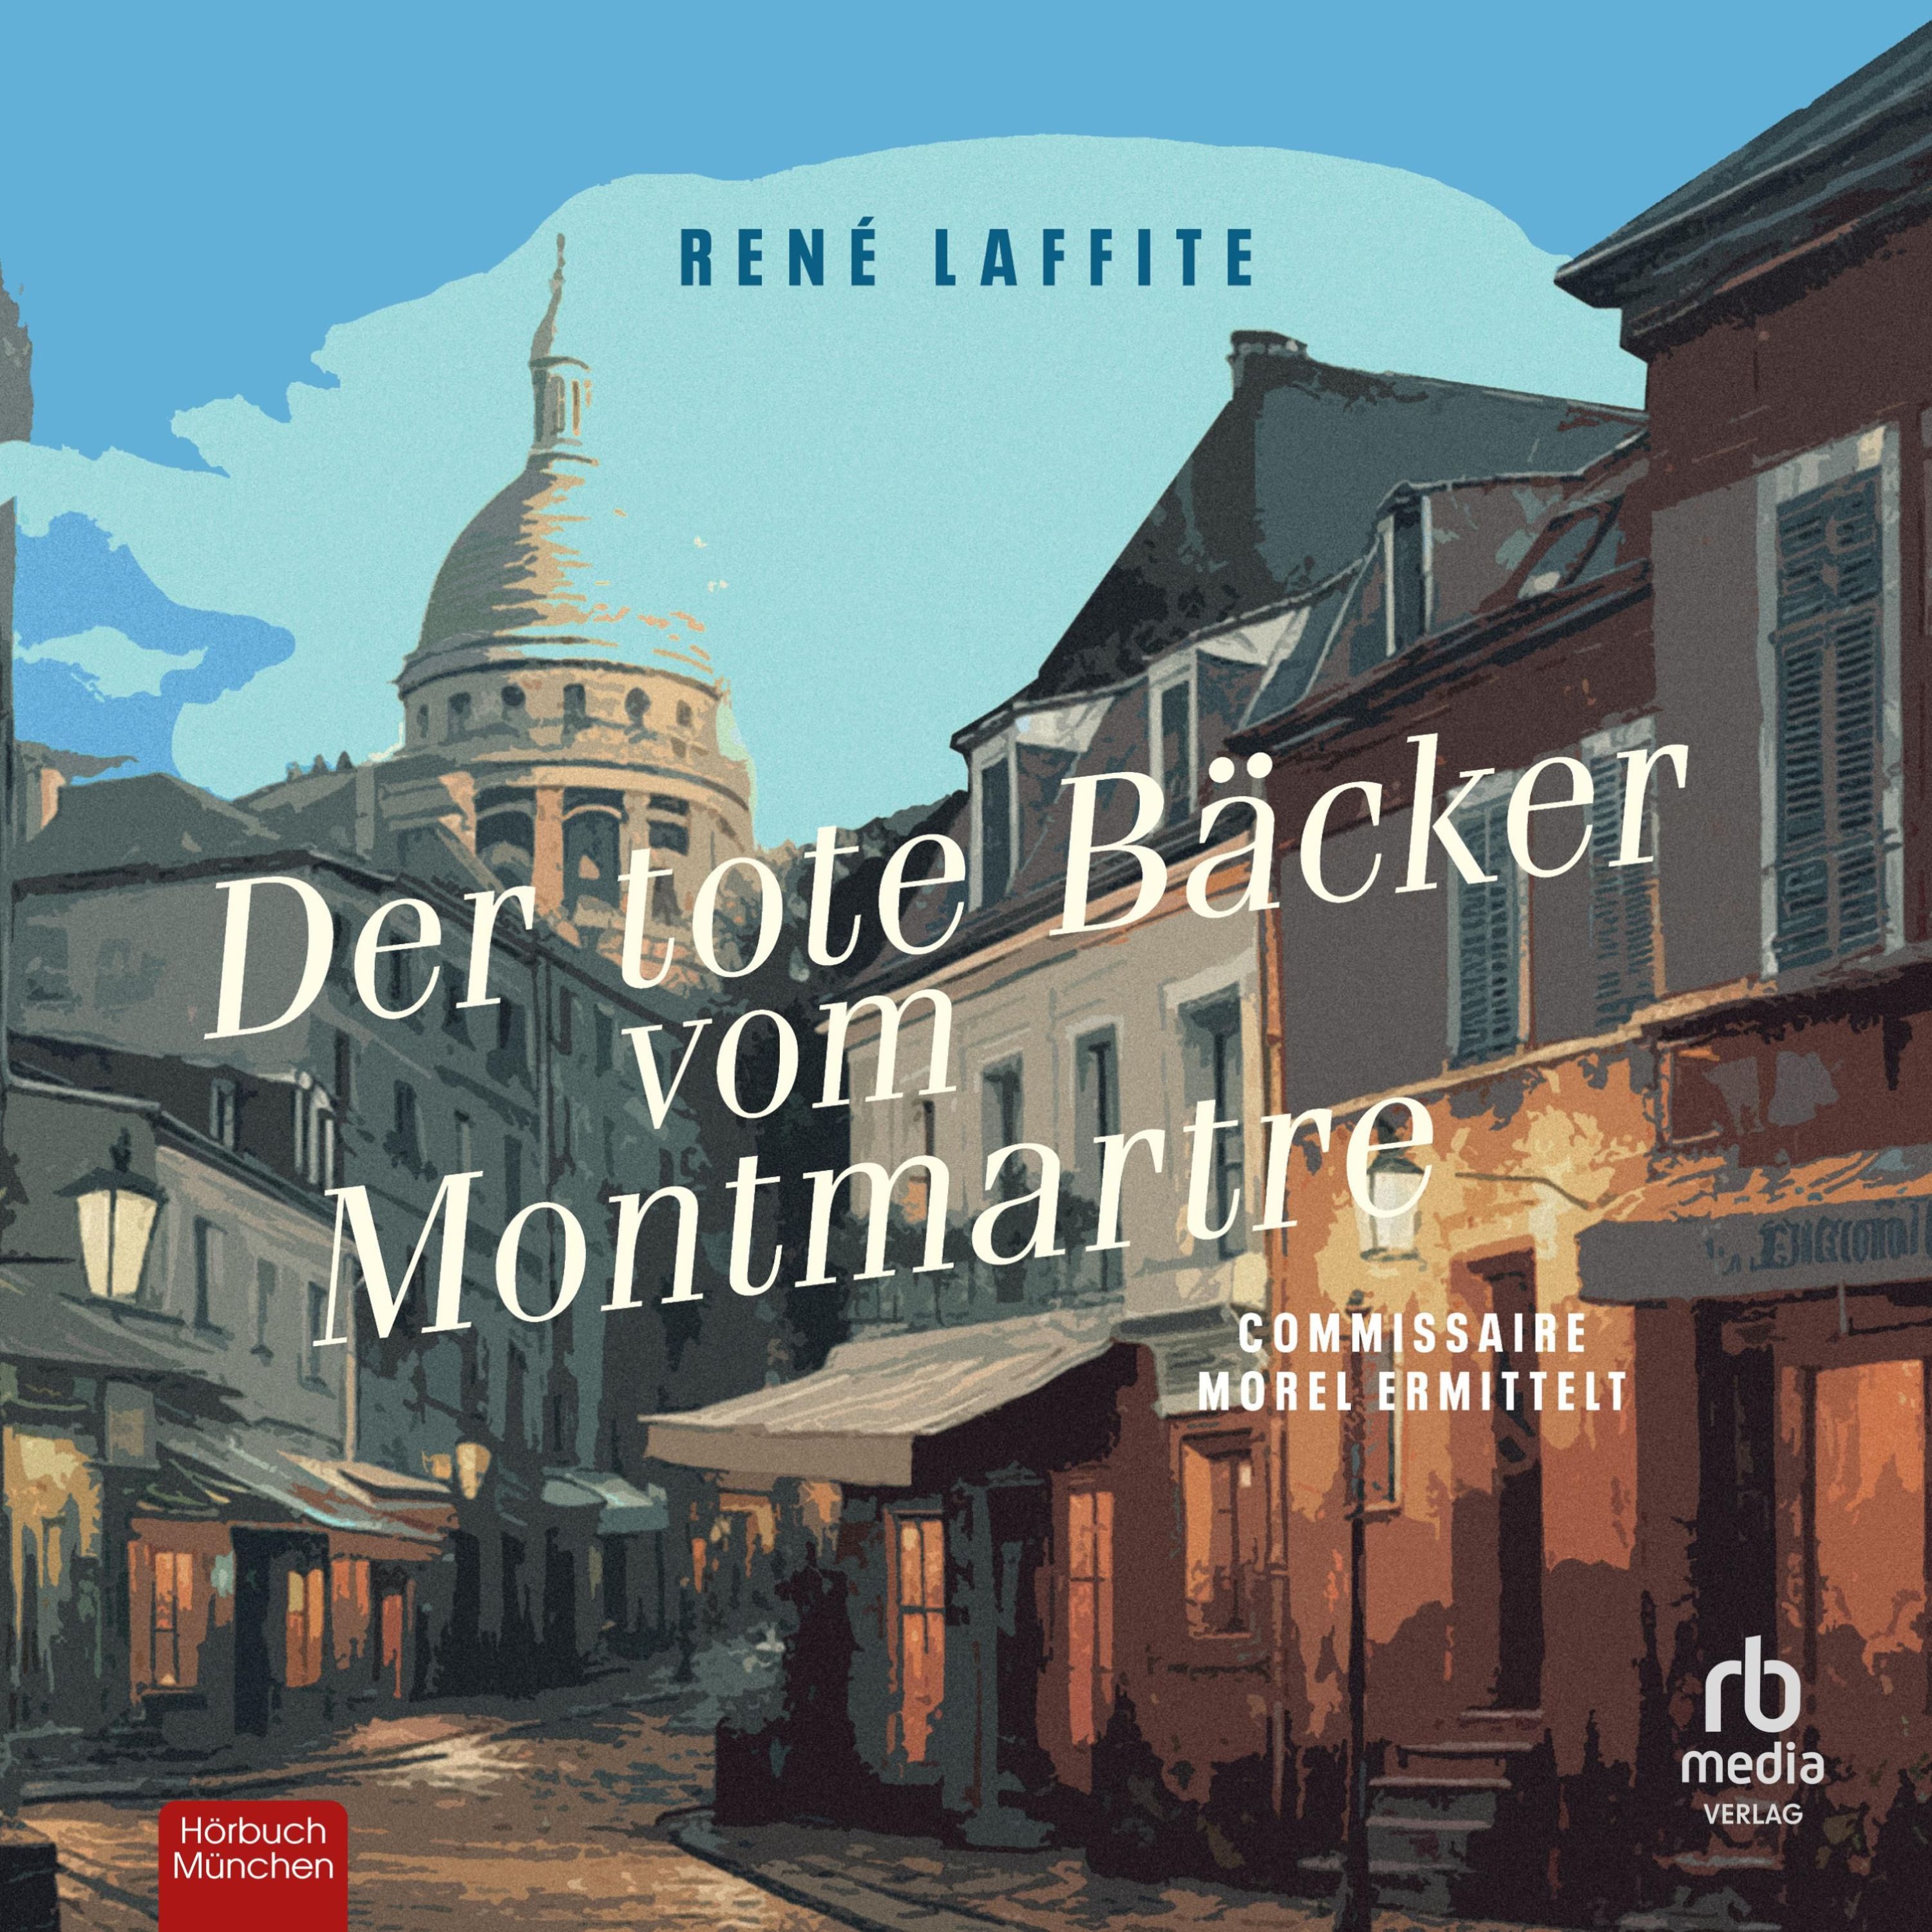 Commissaire Morel ermittelt - 1 - Der tote Bäcker vom Montmartre